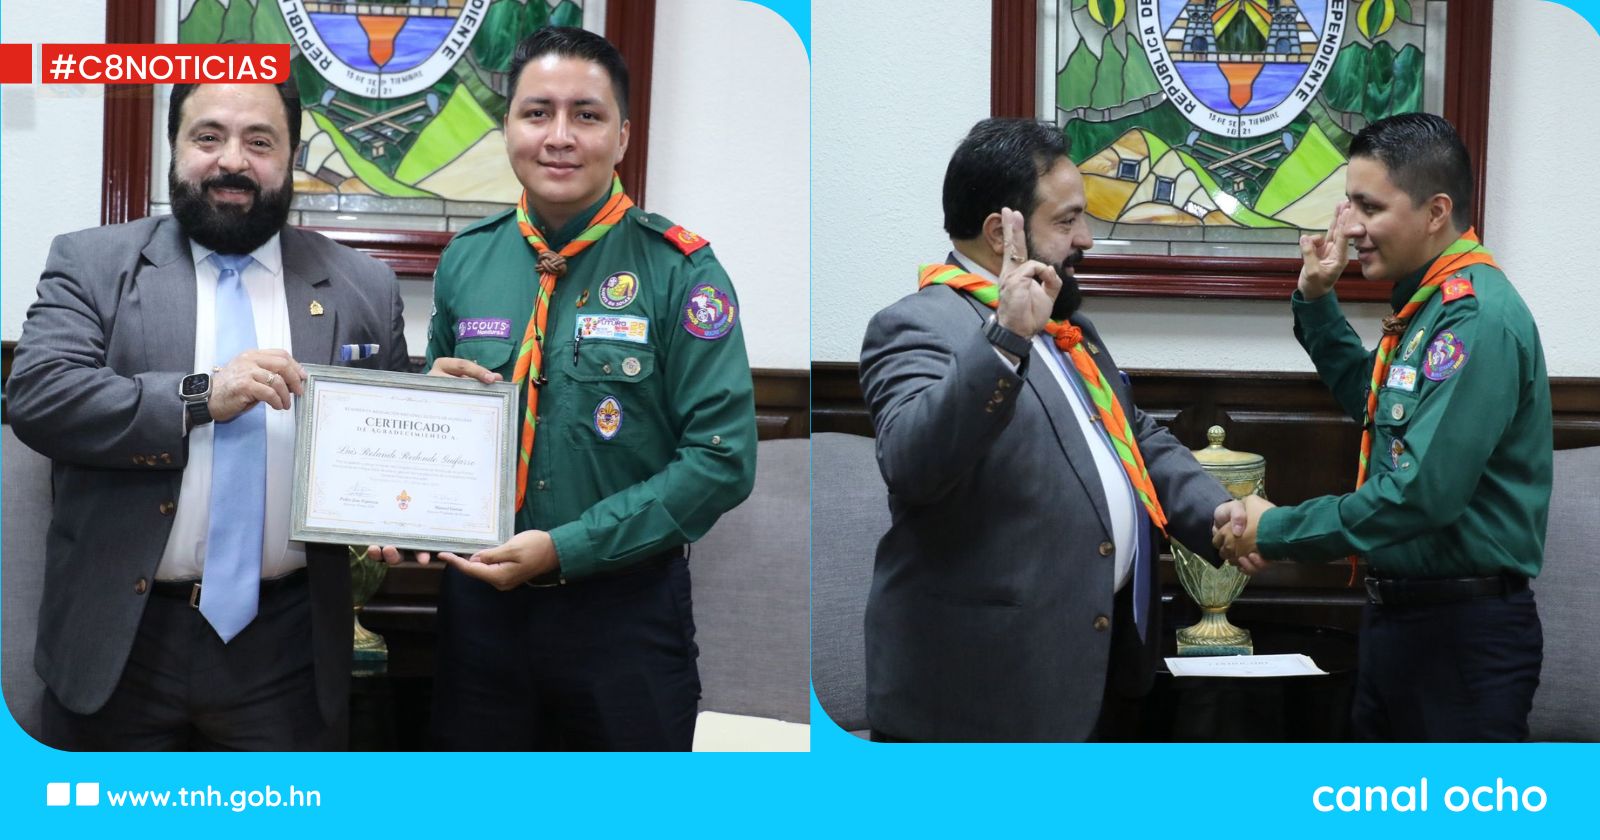 Presidente del CN recibe reconocimiento por su apoyo a la Asociación Scouts de Honduras